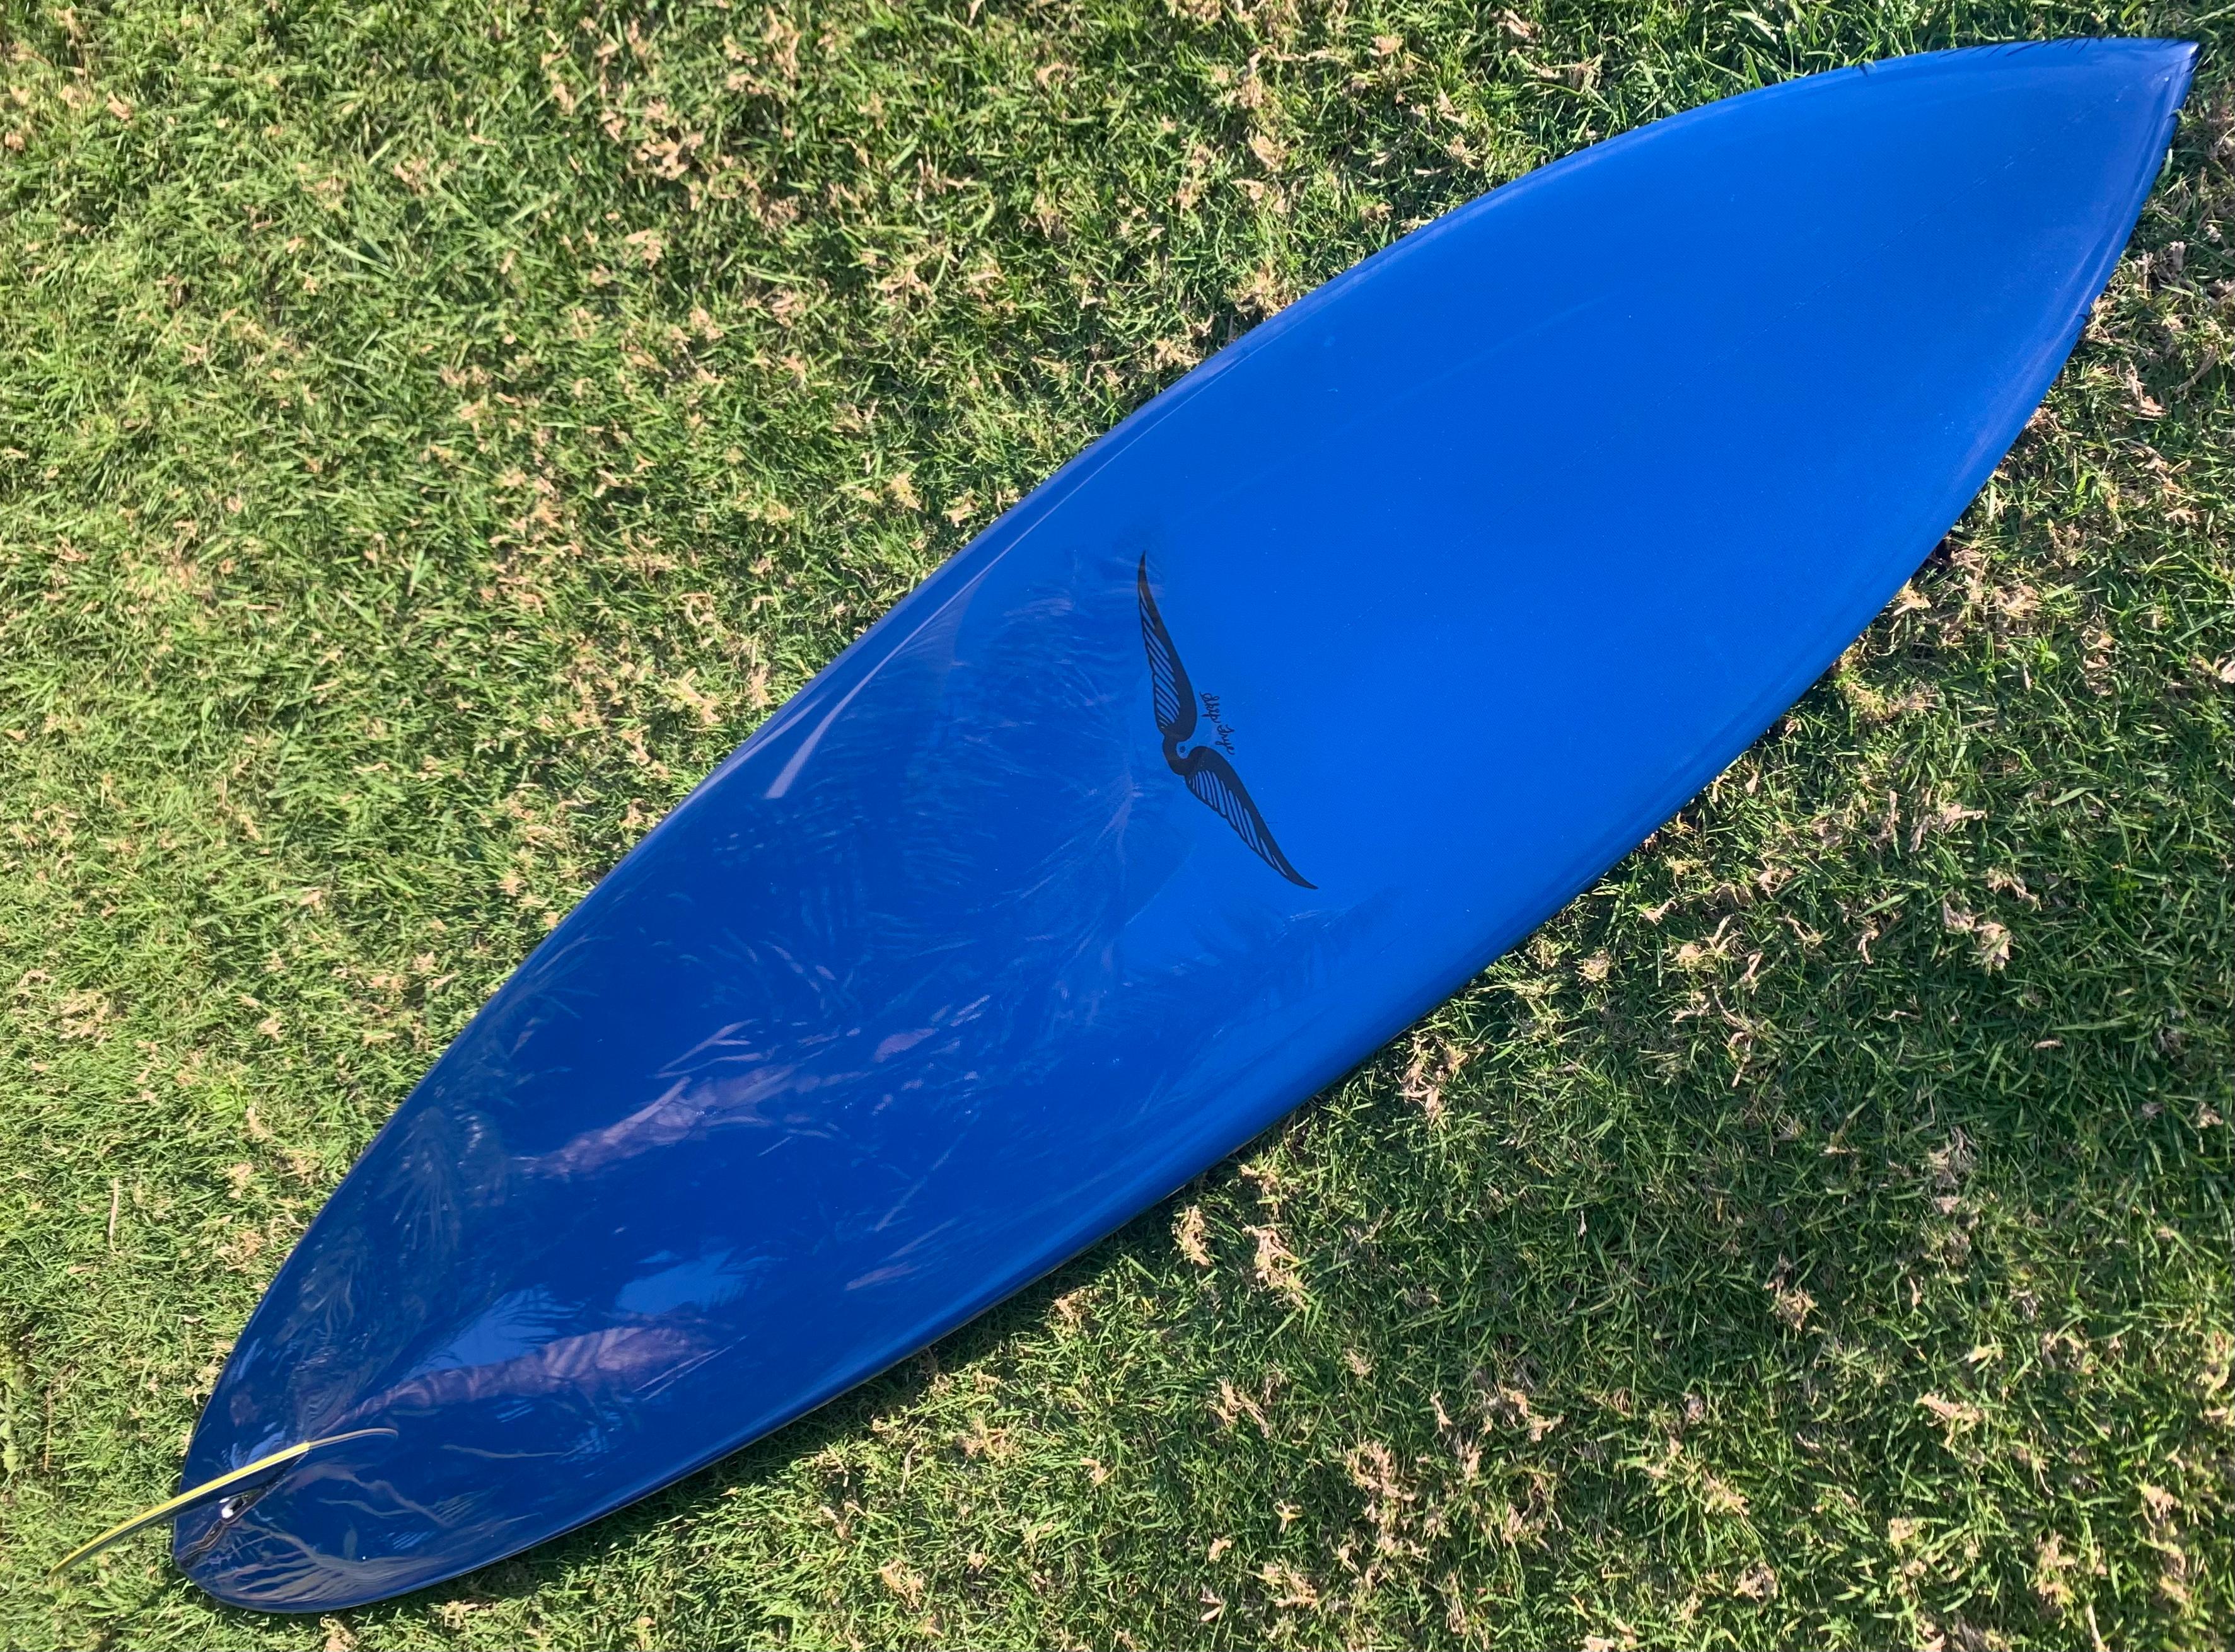 1975 Vintage Skip Frye geformtes Surfbrett. Wunderschönes hellblaues Deck mit marineblauem Boden und ergänzendem Nadelstreifenmuster. Holzflosse mit blauem Durchsichtsfenster. Ein wunderschönes Beispiel für ein vollständig restauriertes